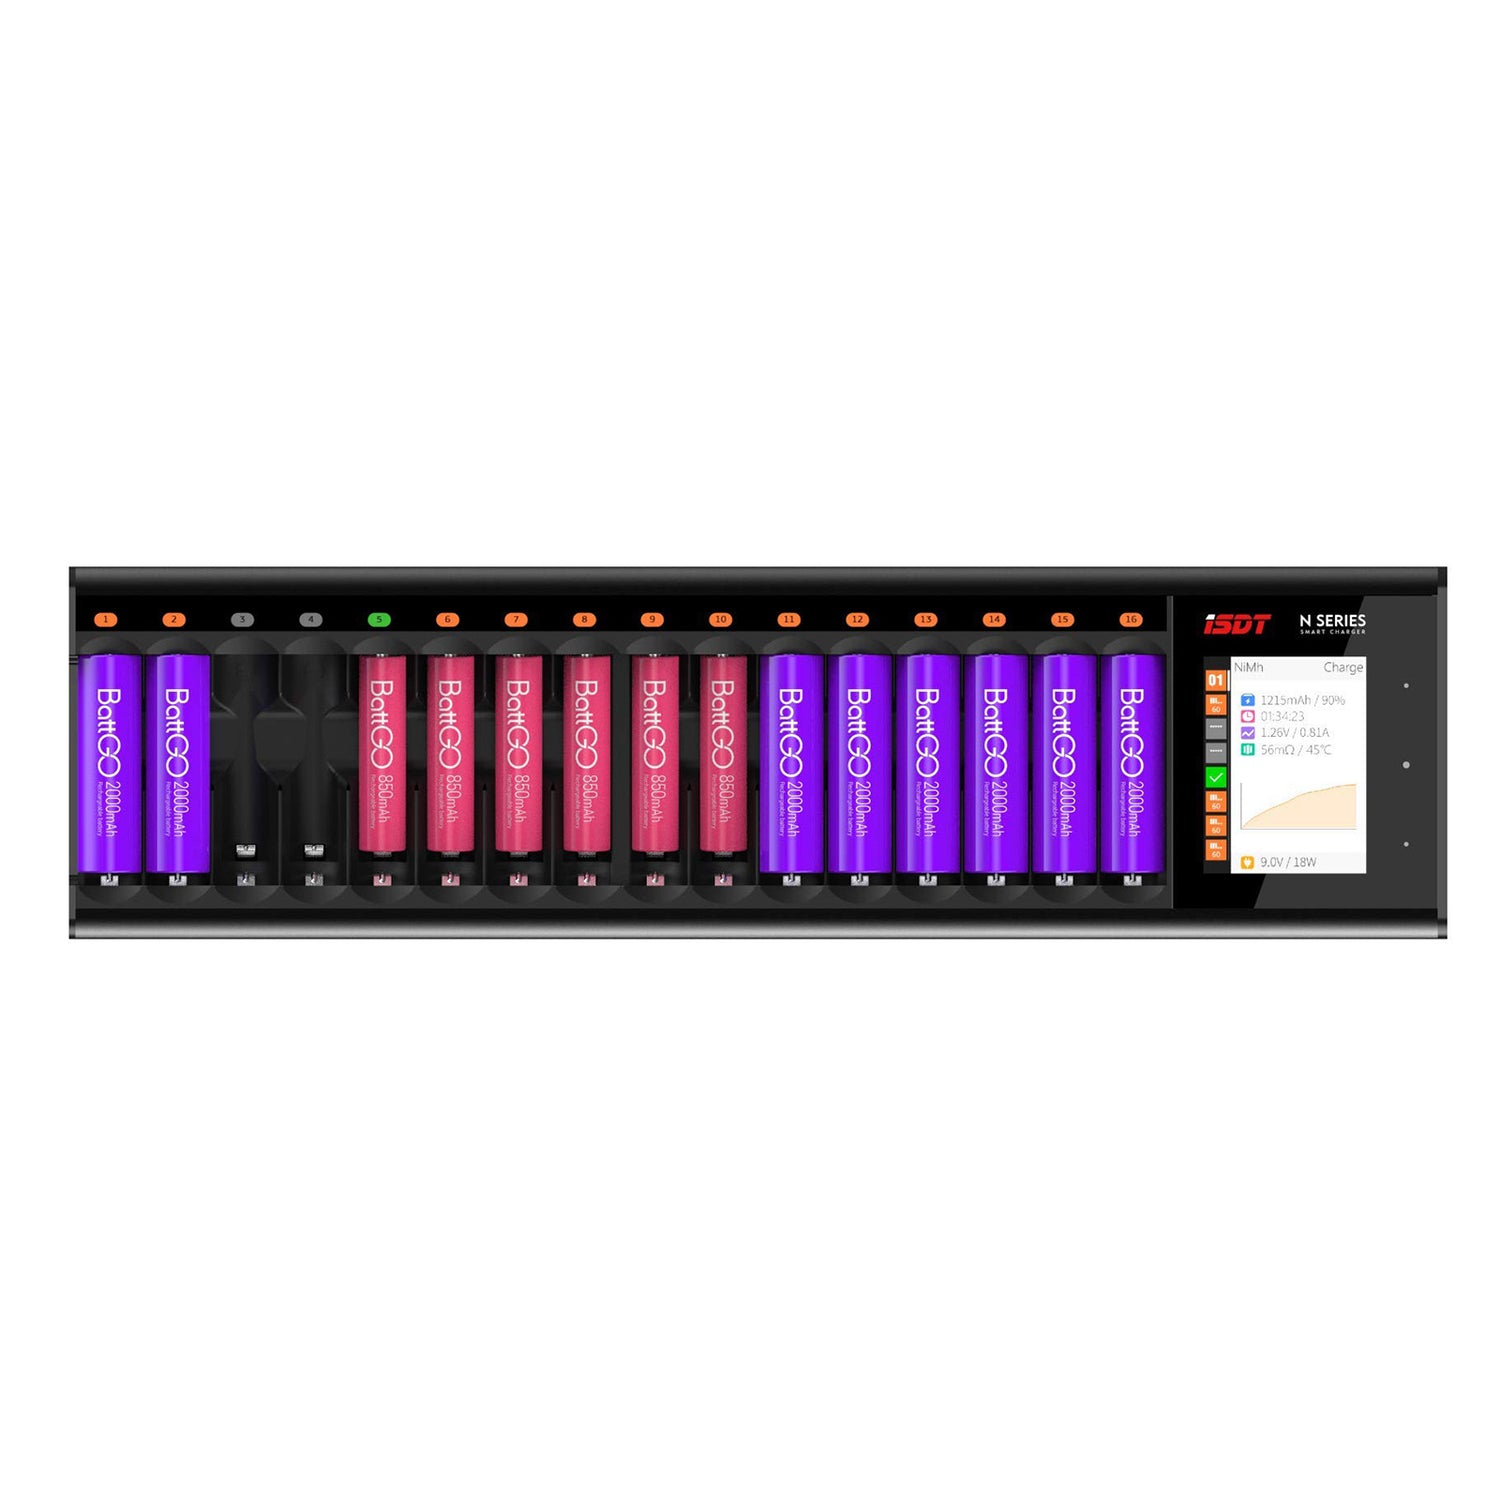 Chargeur de batterie LCD LCD 16 slot pour batteries rechargeables, chargeur rapide 36W pour batteries AA / AAA